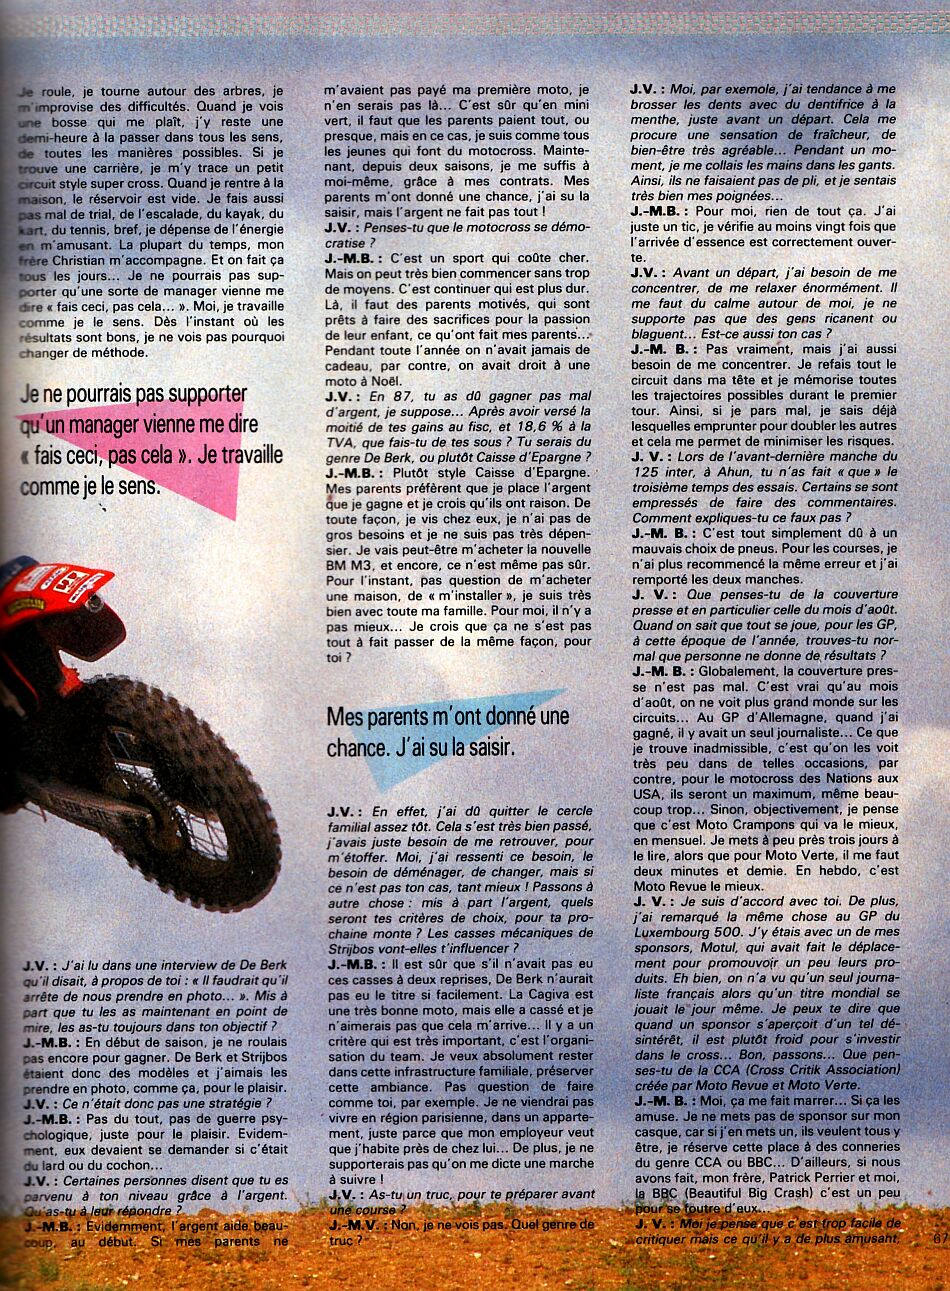 La page 4 de l'interview de Jean-Michel Bayle par Jacky Vimond pour le magazine Moto Crampons d'octobre 1987